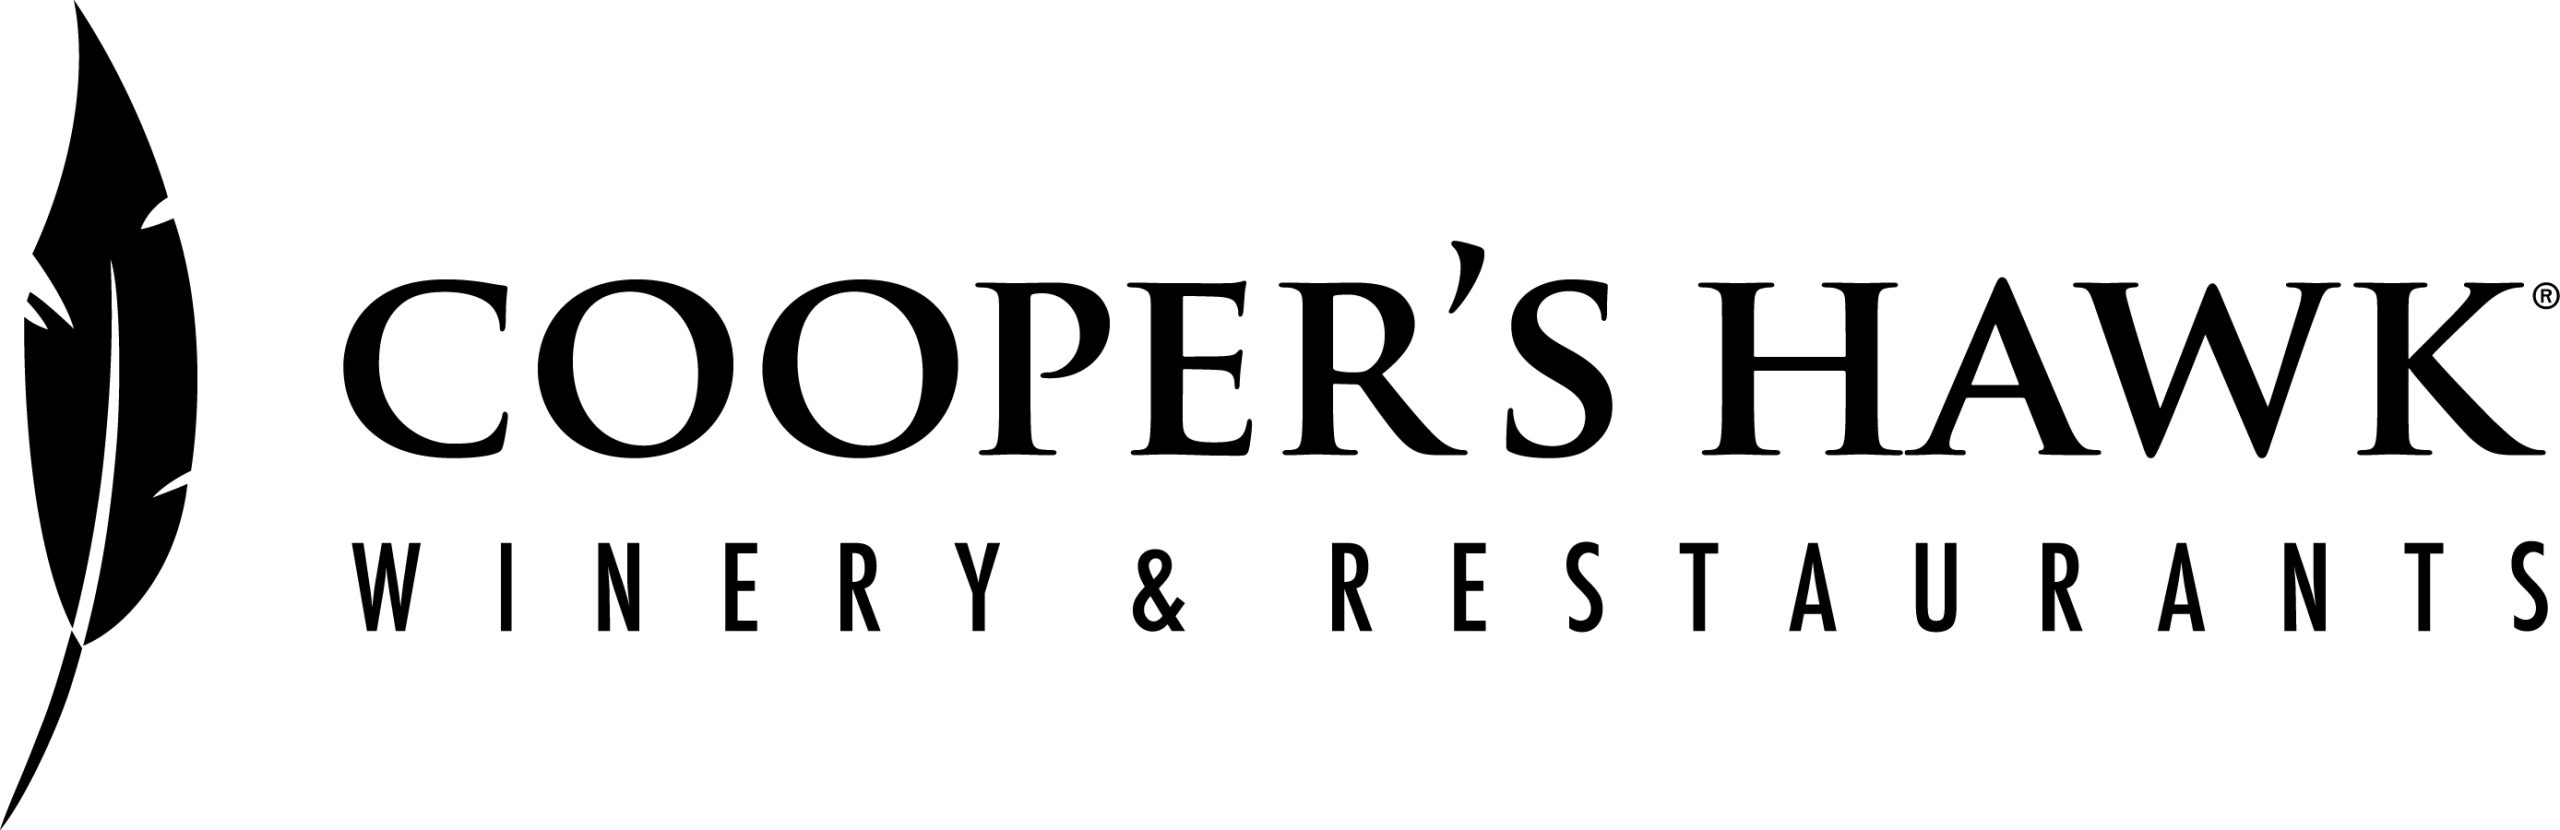 Cooper’s Hawk Winery & Restaurant